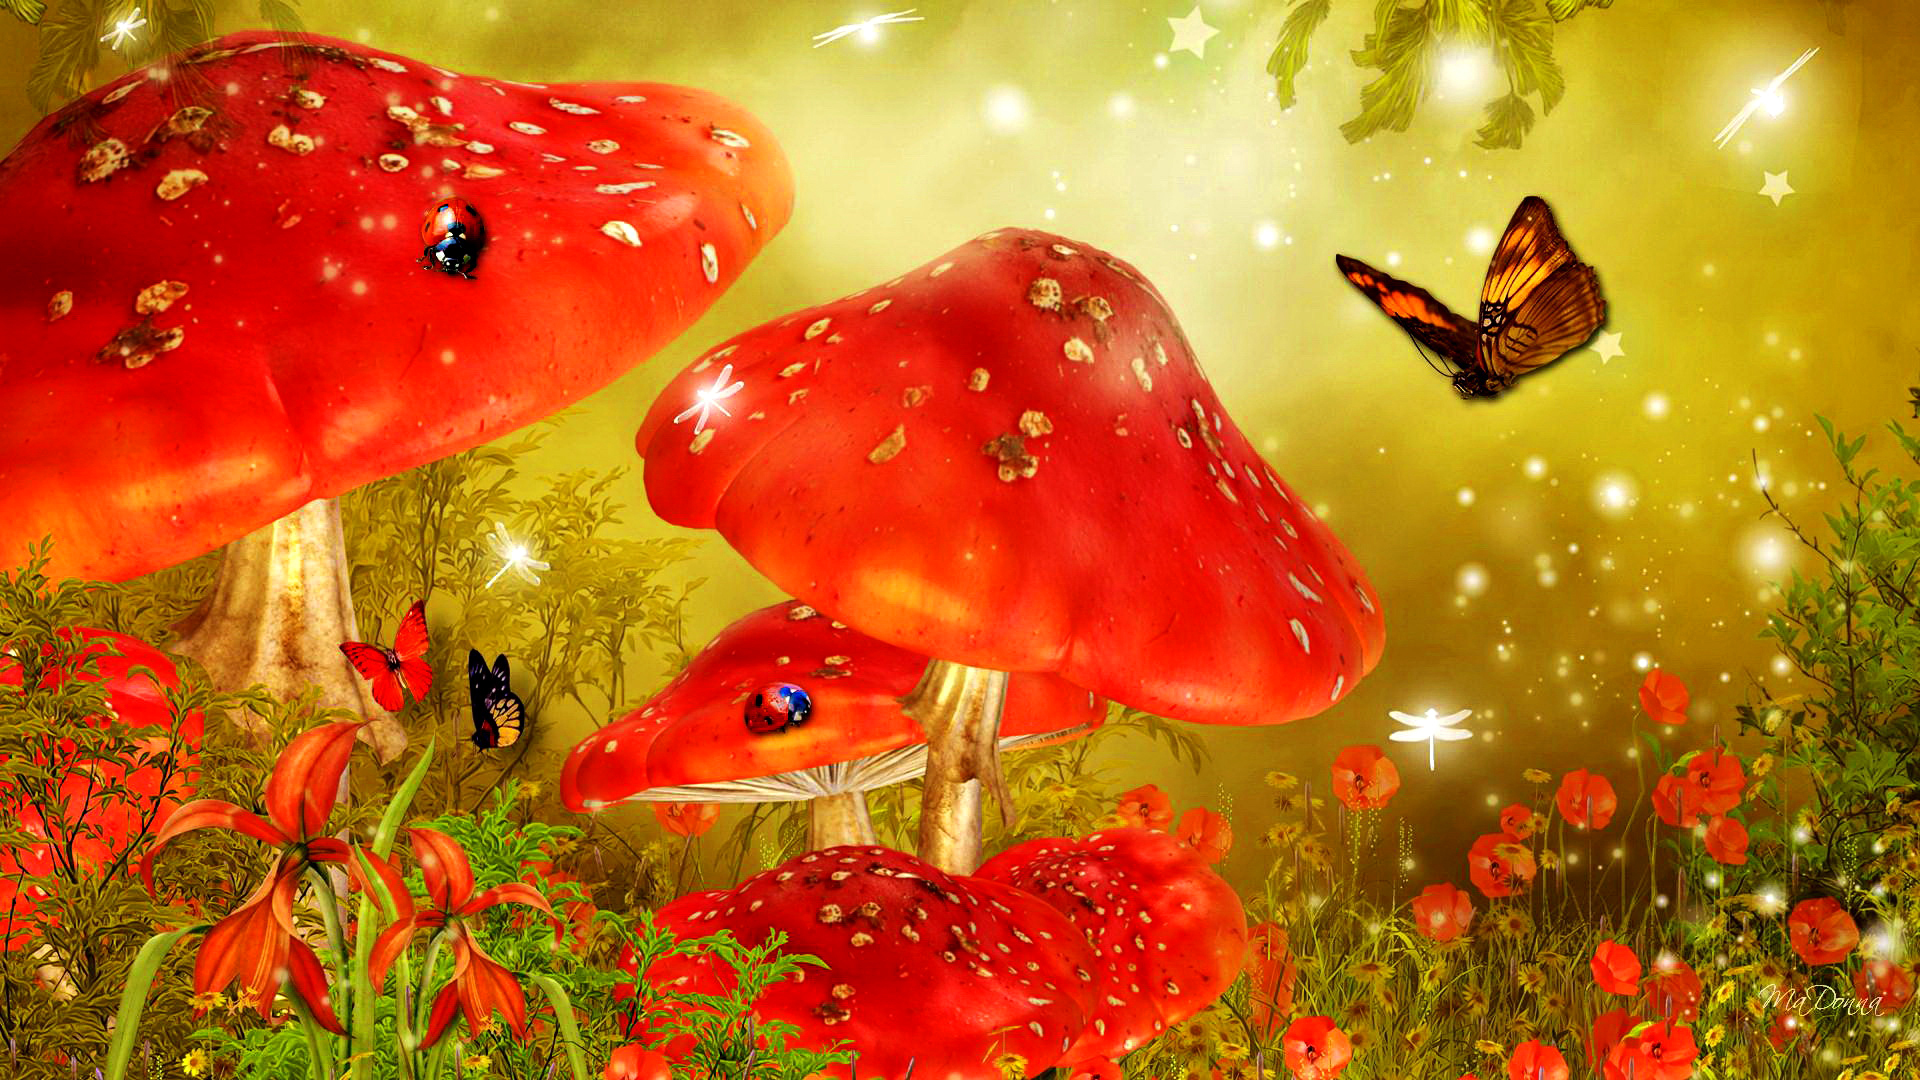 Скачать обои бесплатно Цветок, Лес, Красный, Бабочка, Гриб, Божья Коровка, Художественные картинка на рабочий стол ПК